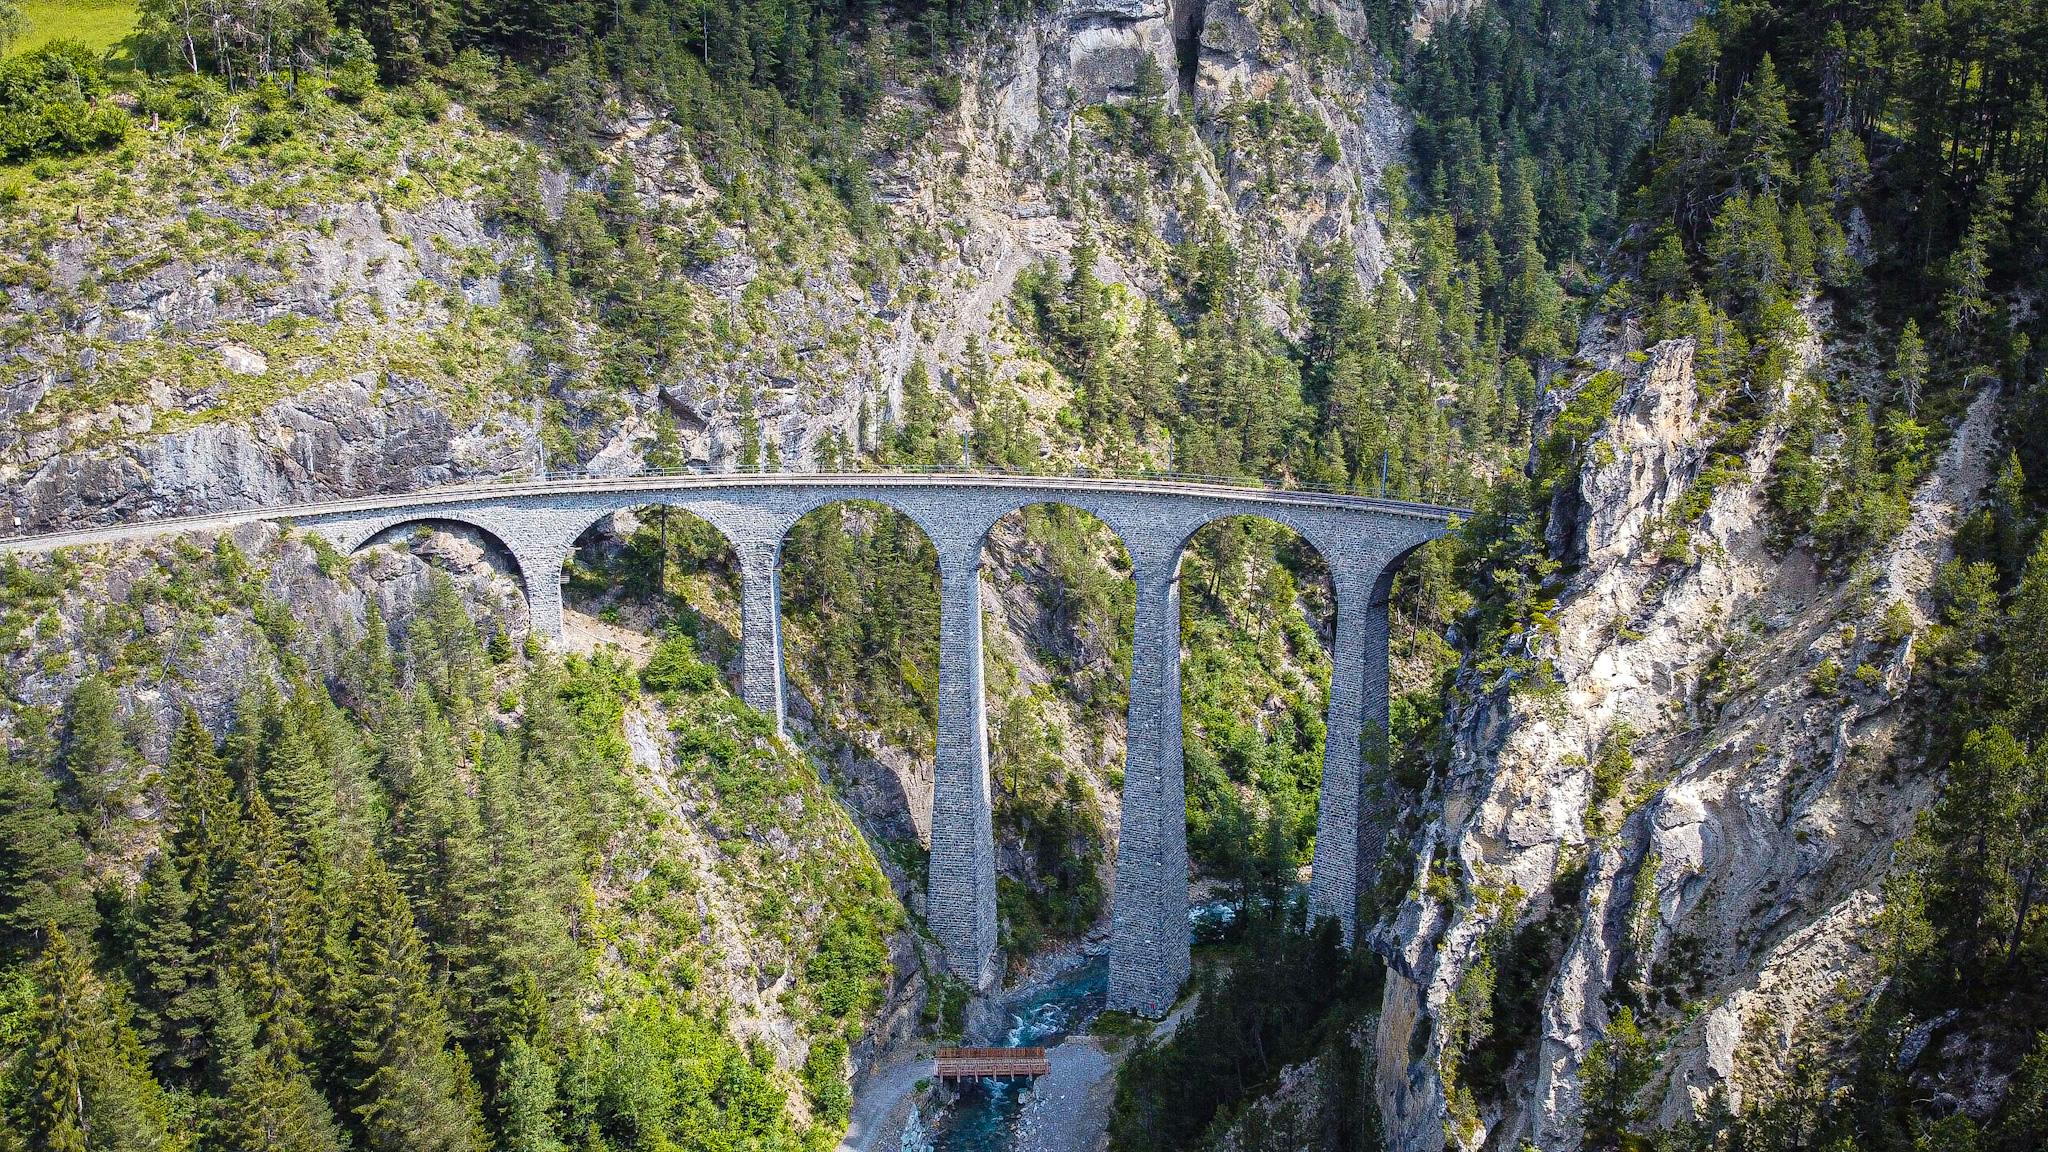 Landwasser Viaduct in Switzerland